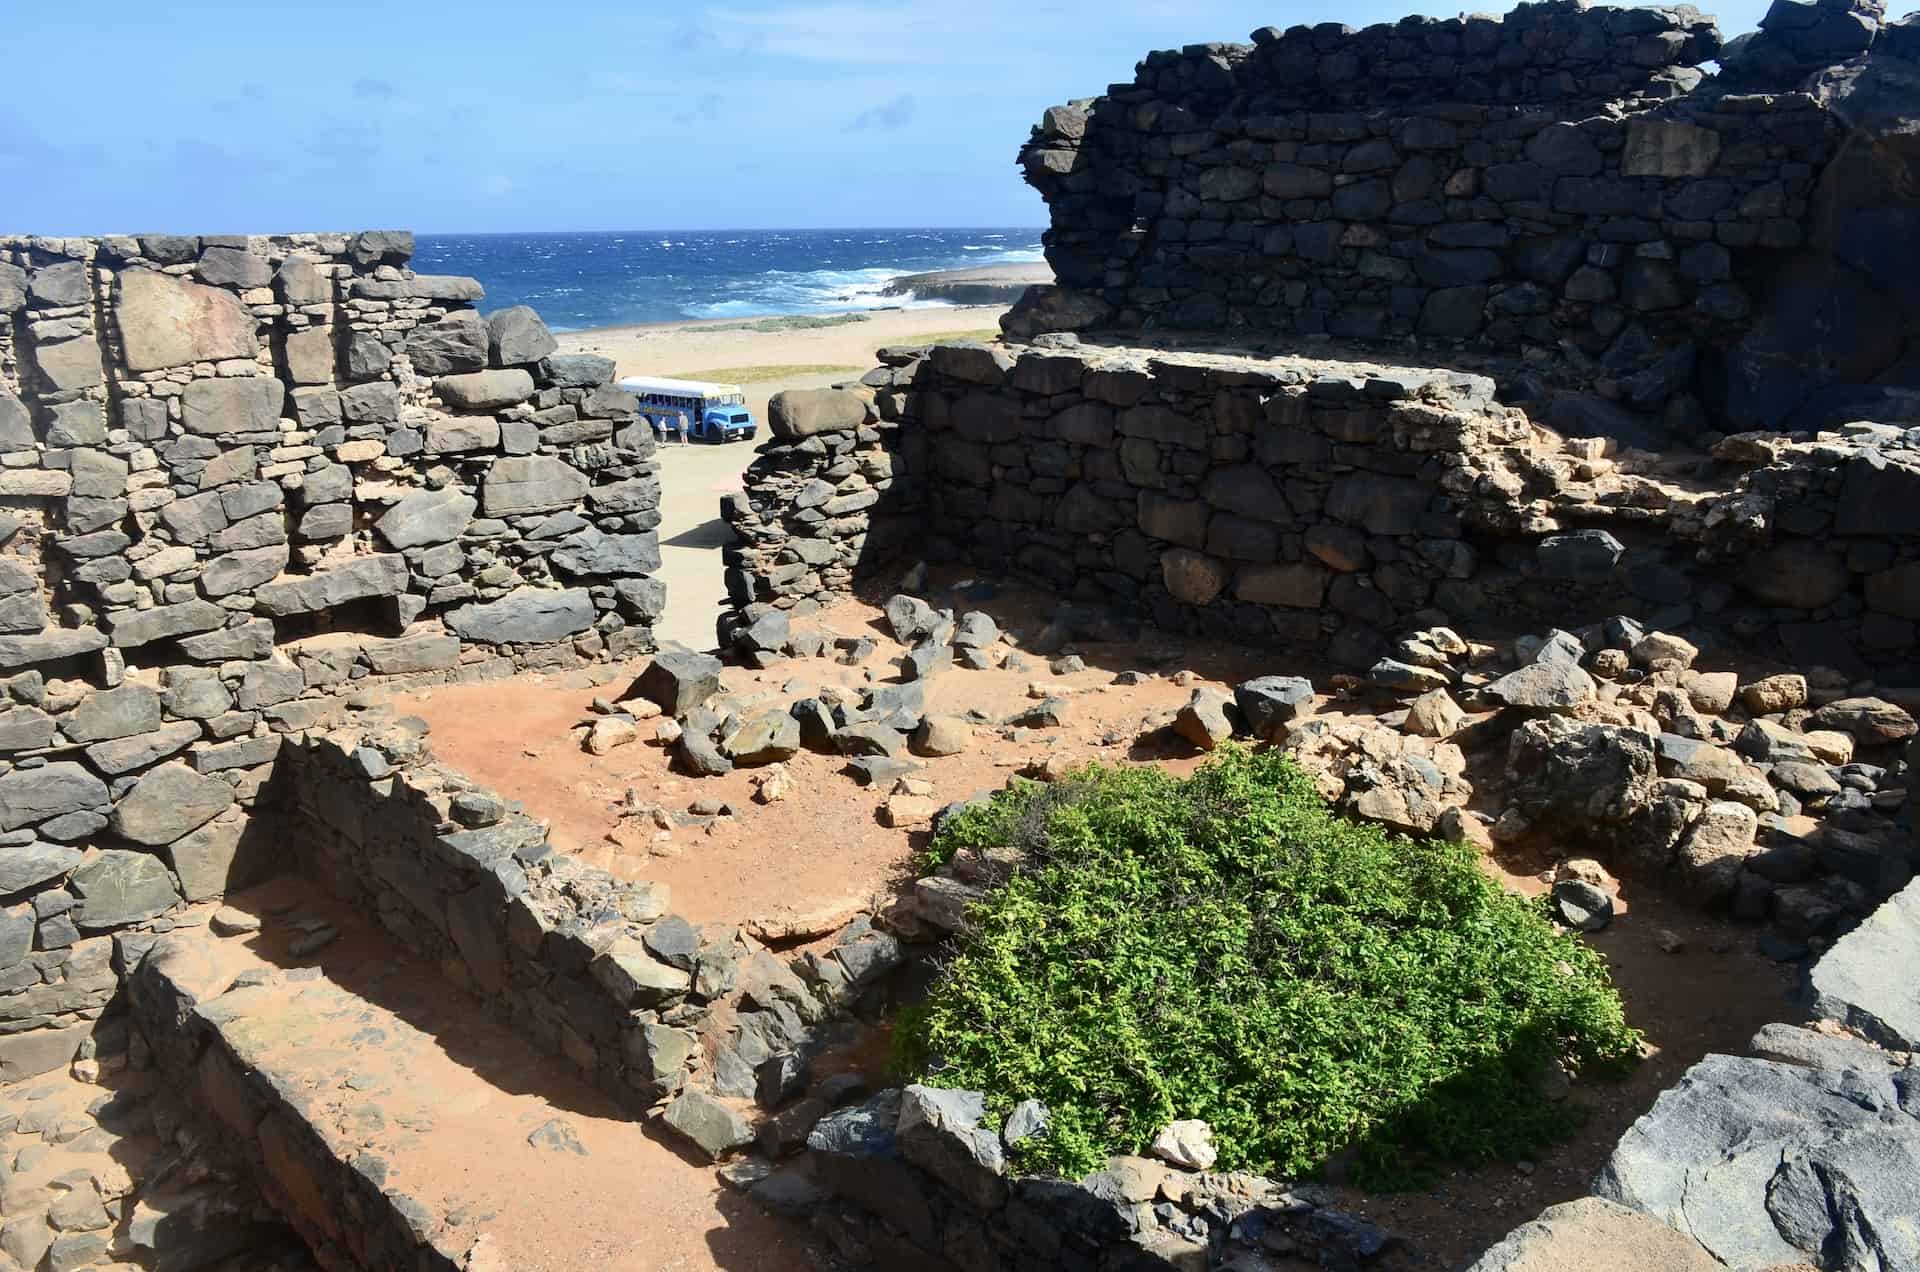 Bushiribana Gold Mill ruins in Paradera, Aruba